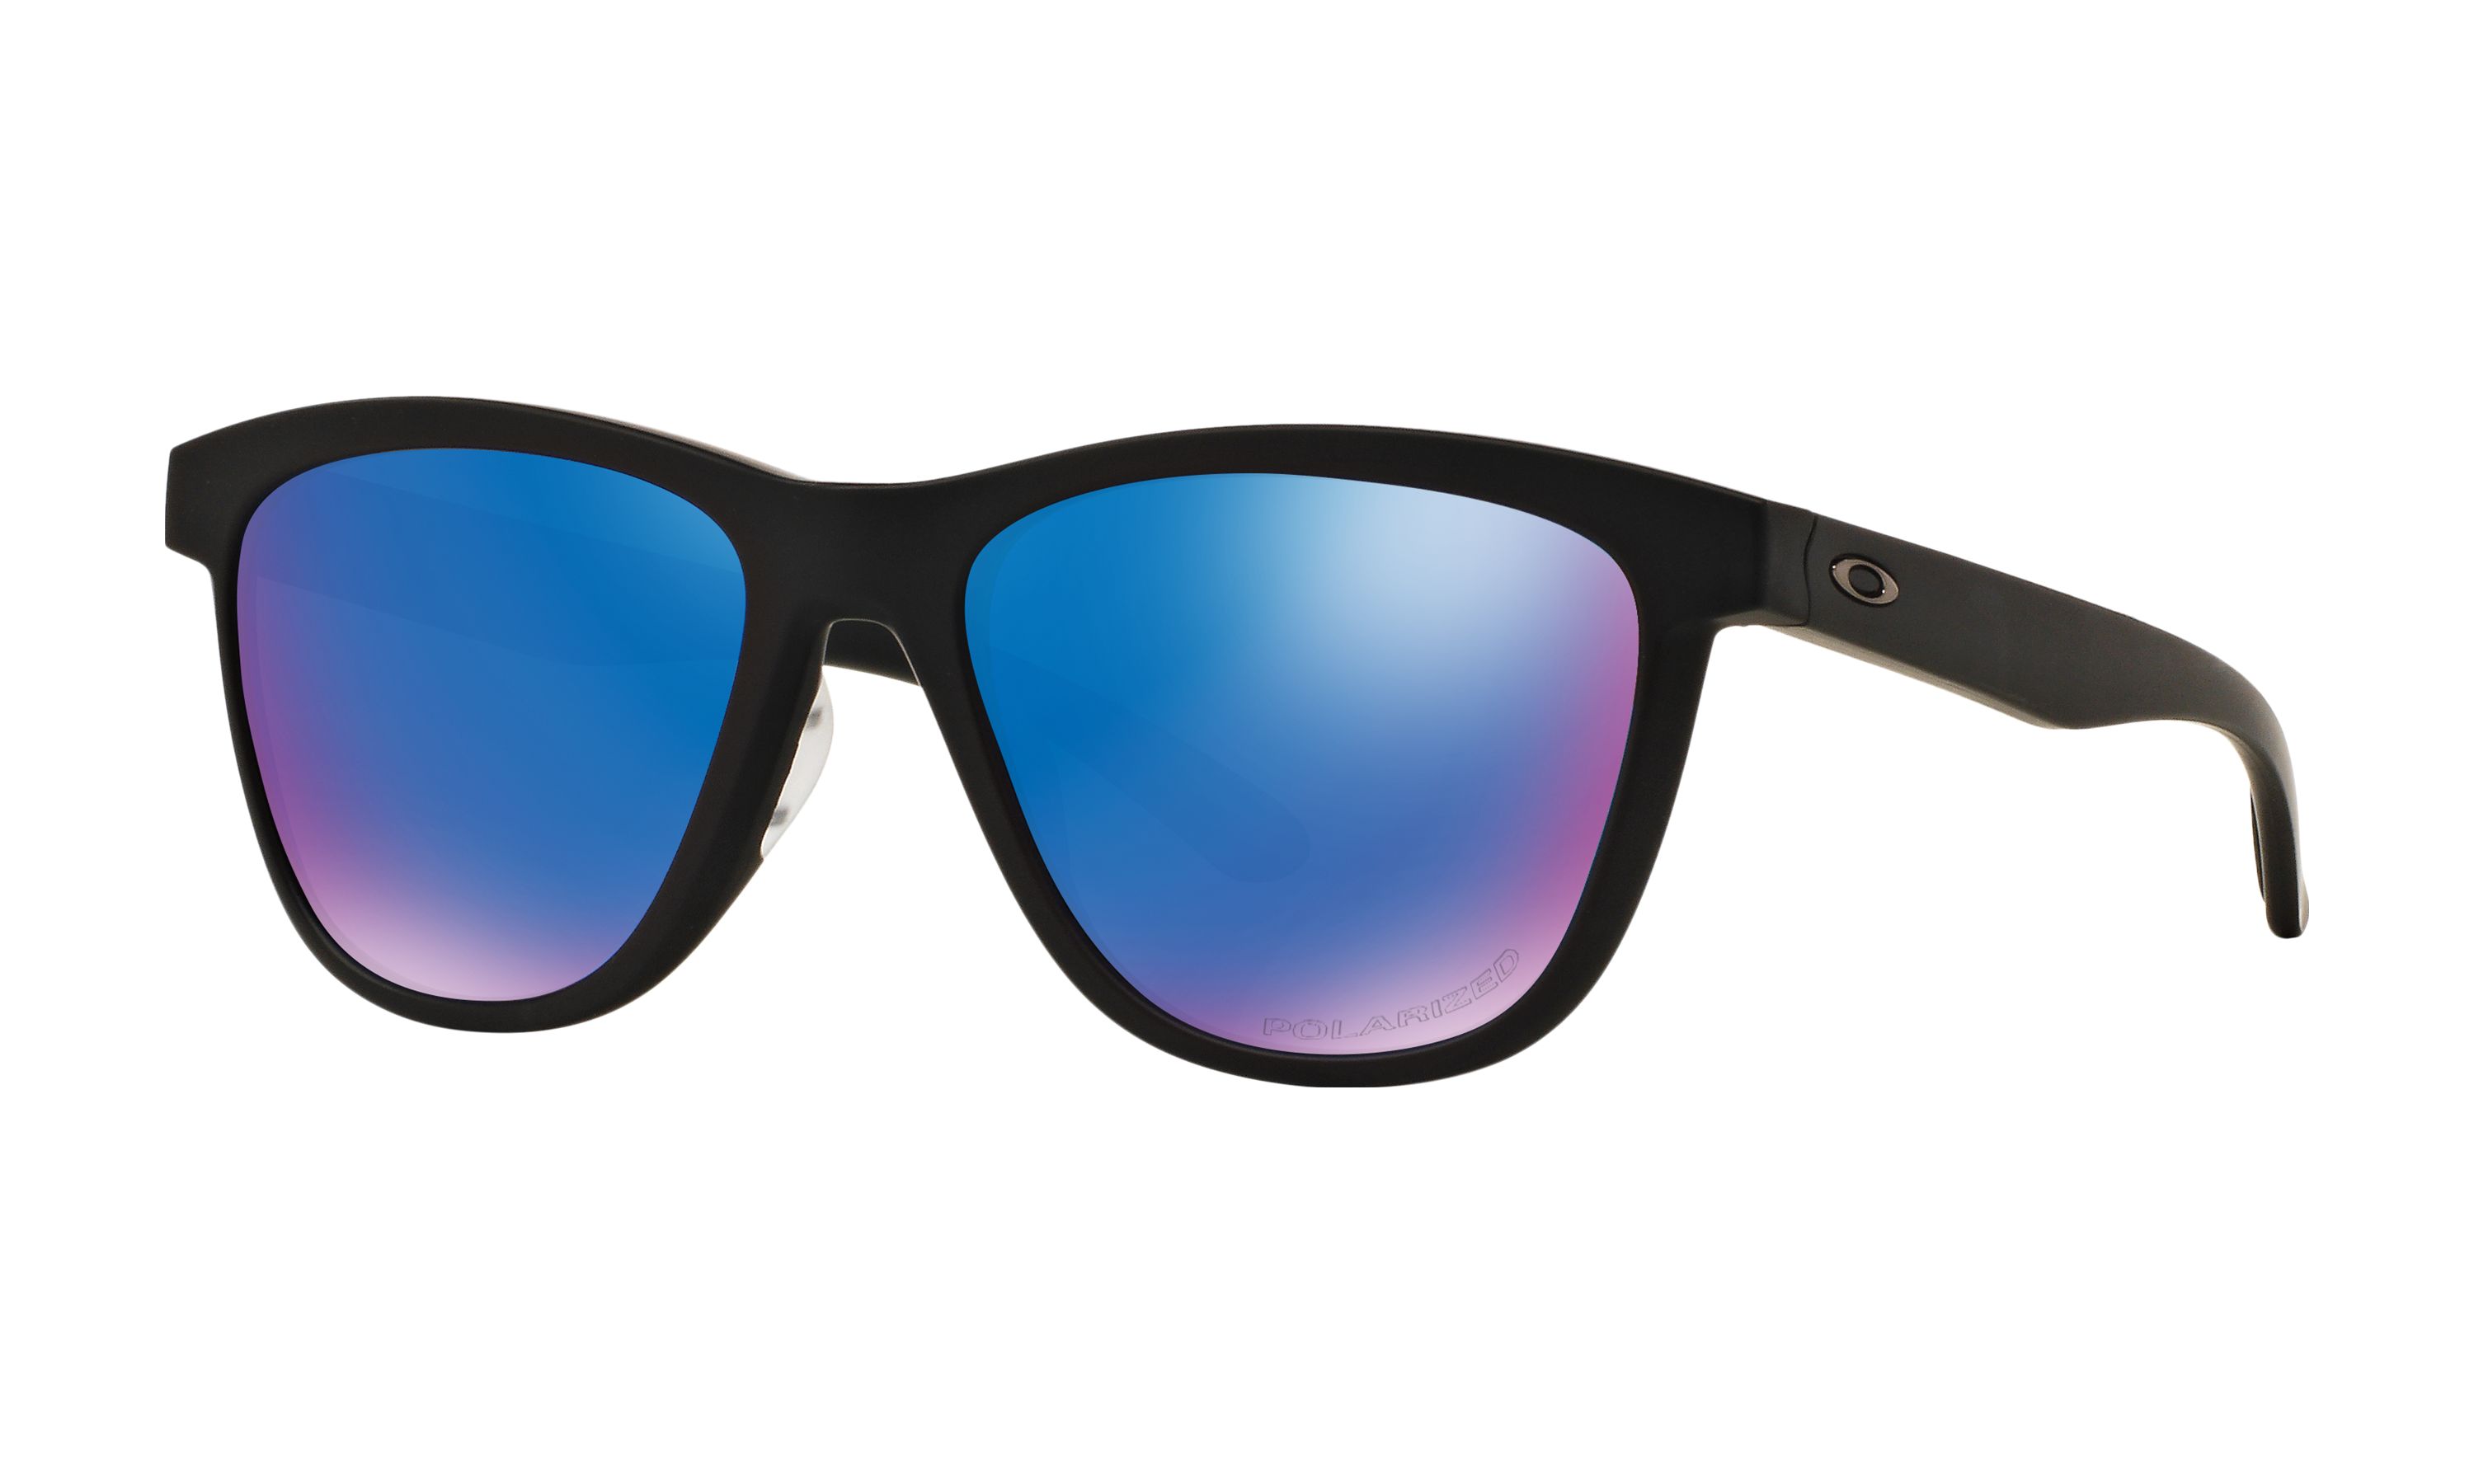 Moonlighter Polished Black Sunglasses 